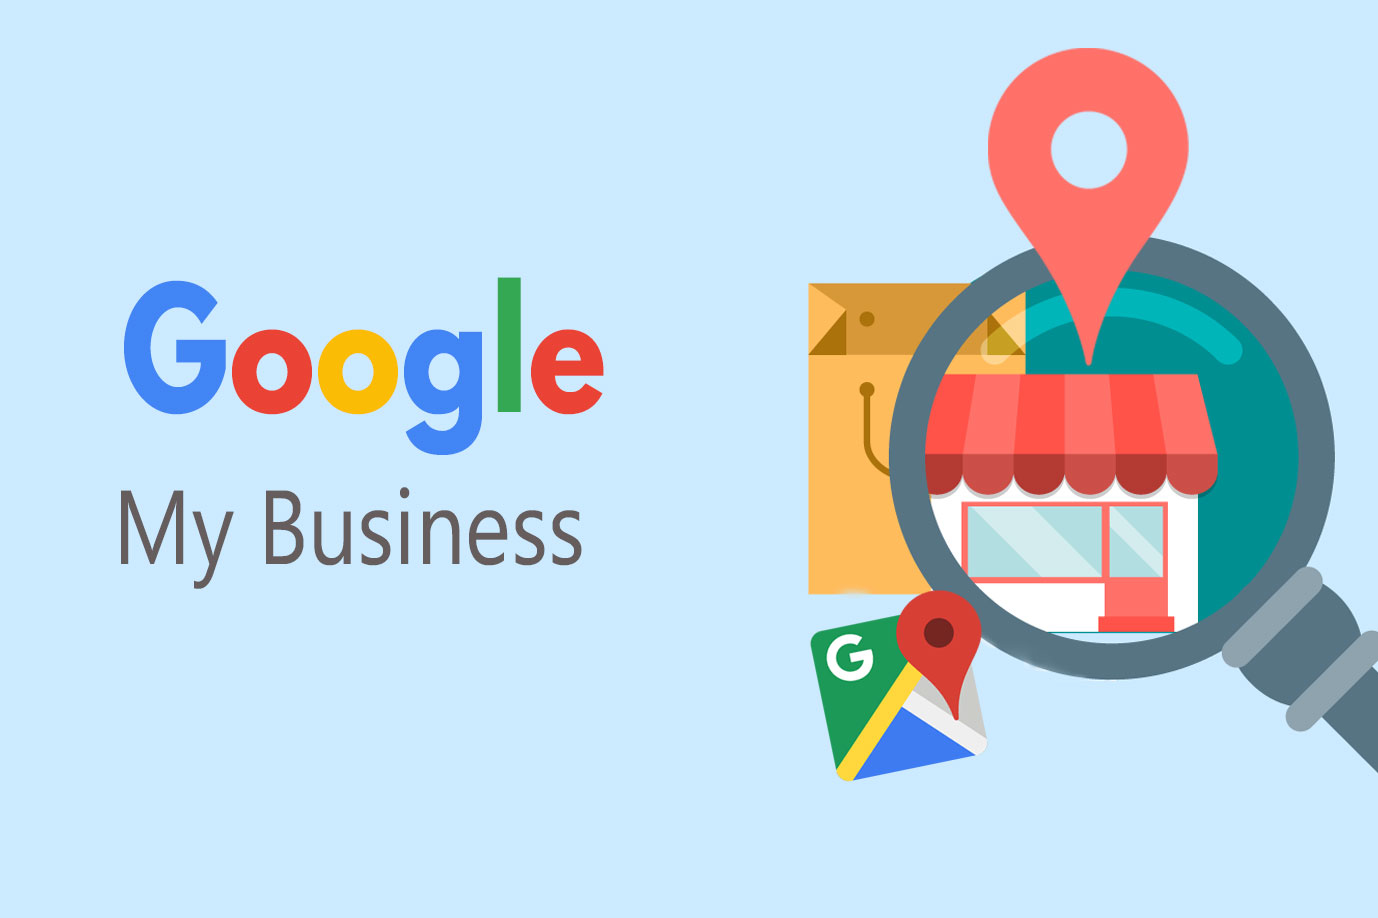 Tìm hiểu về tầm quan trong và lợi ích của Google doanh nghiệp (google my business, google business)